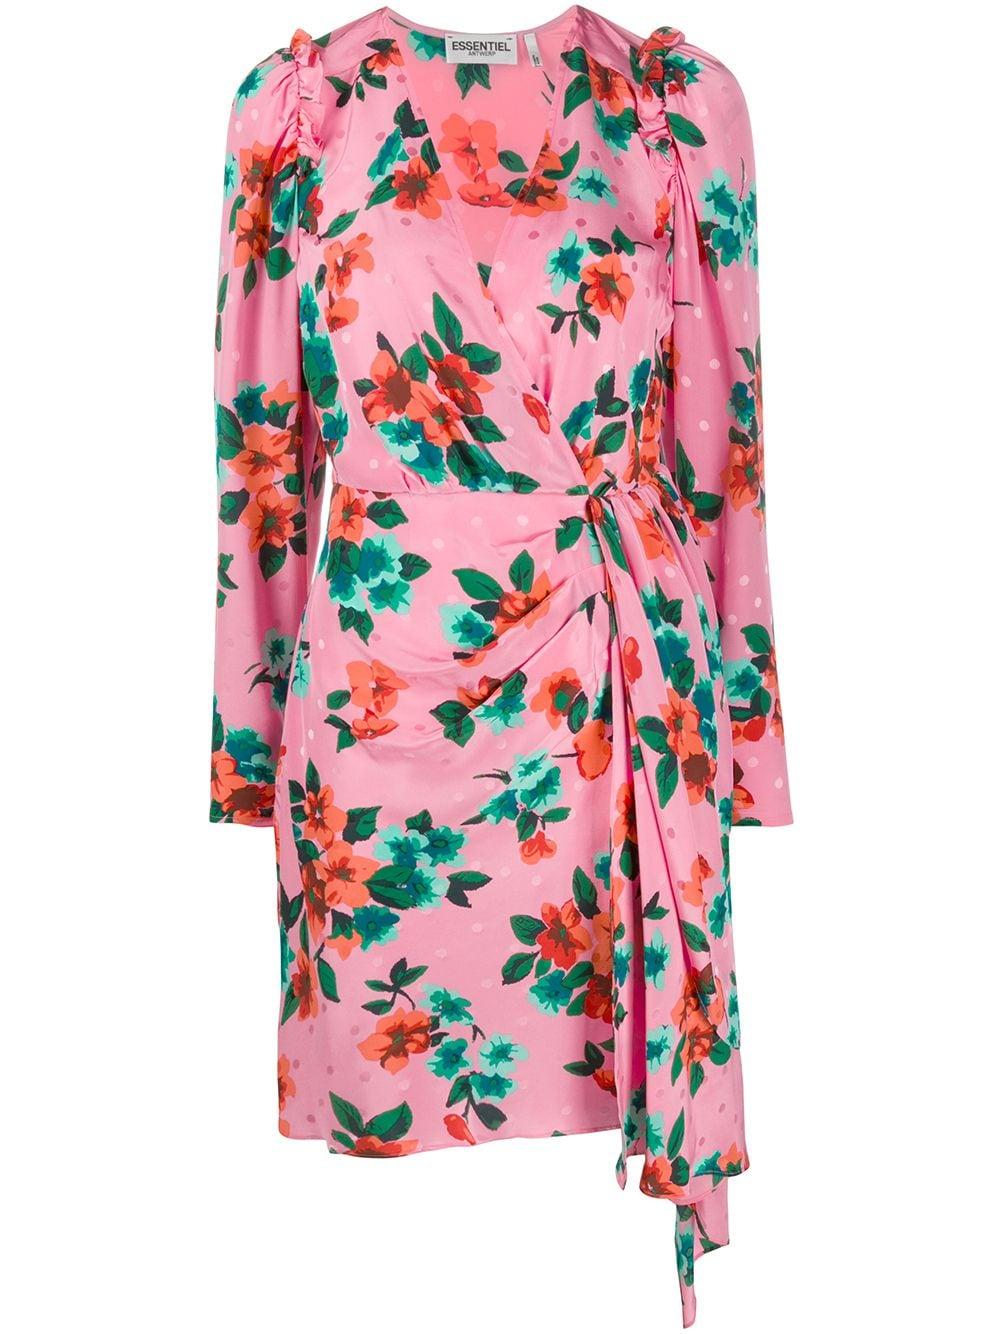 Essentiel Antwerp Silk Floral Print Dress in Pink - Lyst